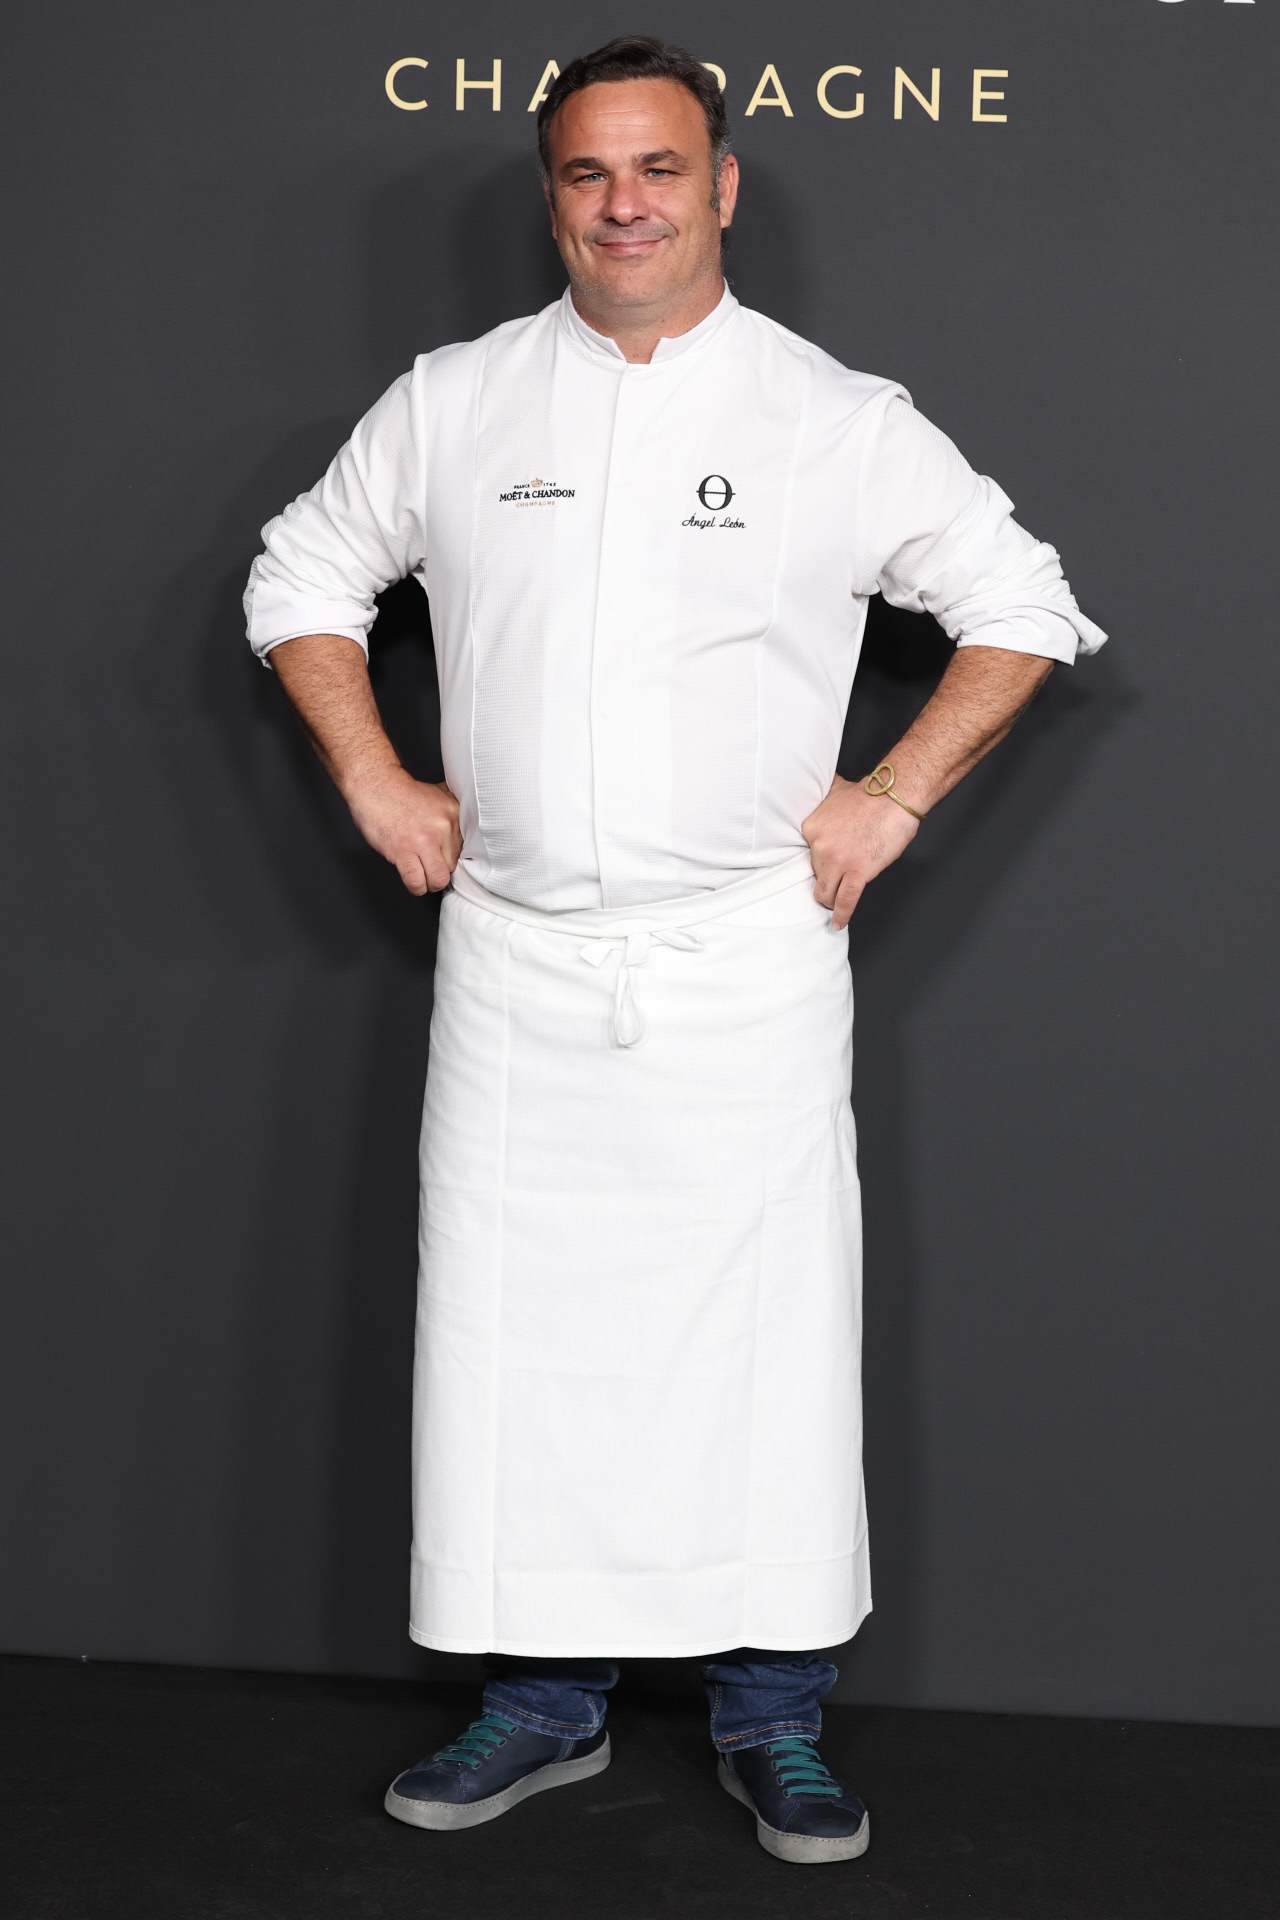 El cocinero ngel Len, conocido como 'Chef del Mar' y tres estrellas Michelin en Aponiente, fue el encargado de ofrecer la cena.